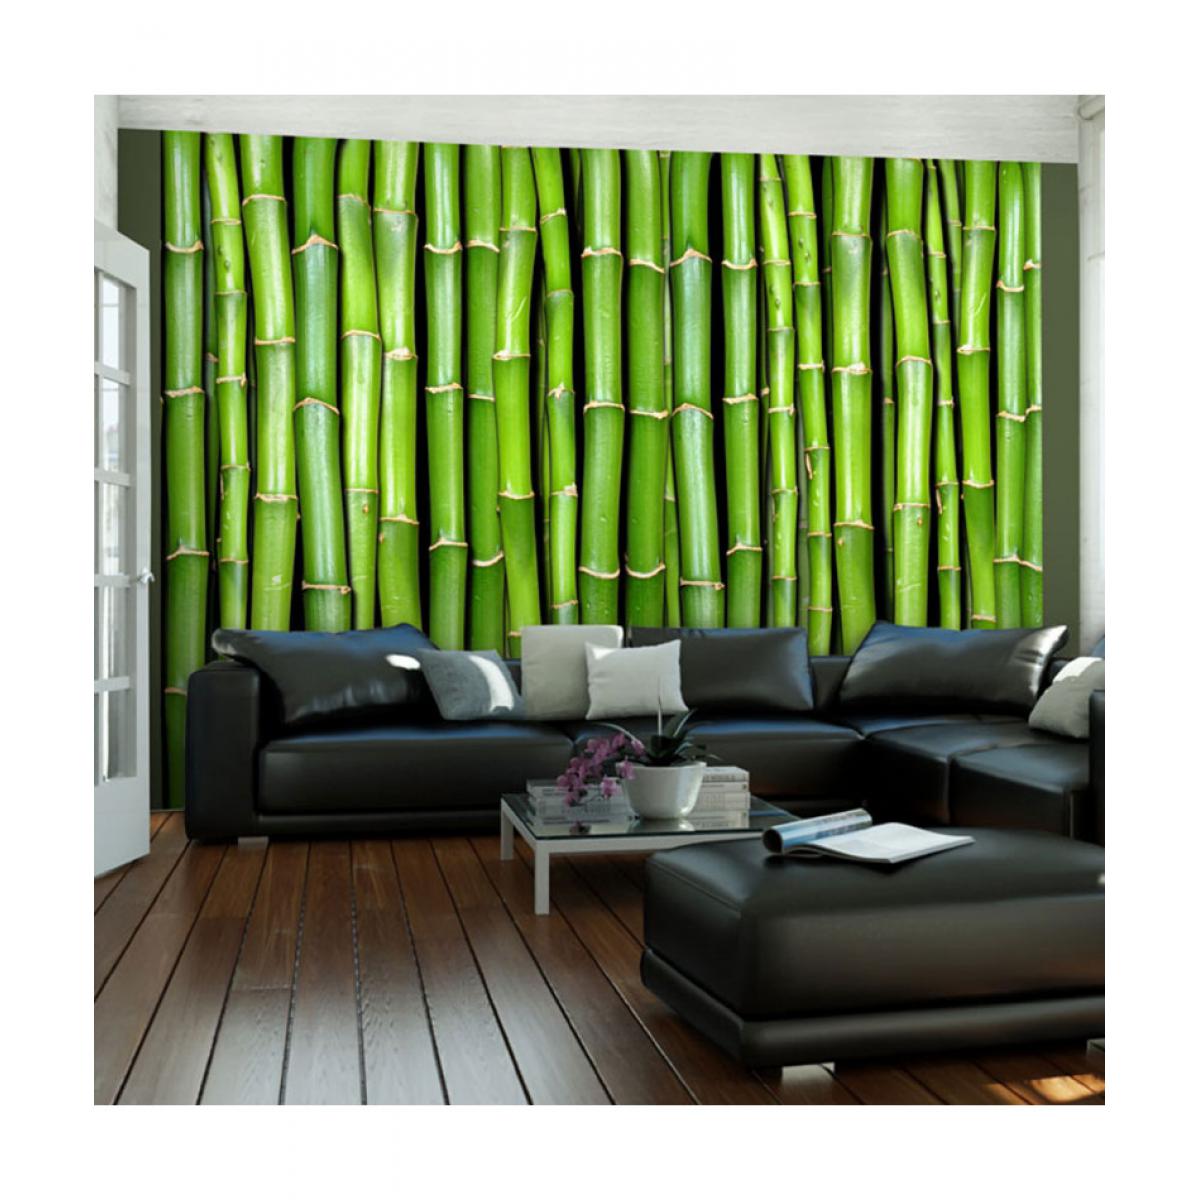 Artgeist - Papier peint - Mur vert bambou 250x193 - Papier peint